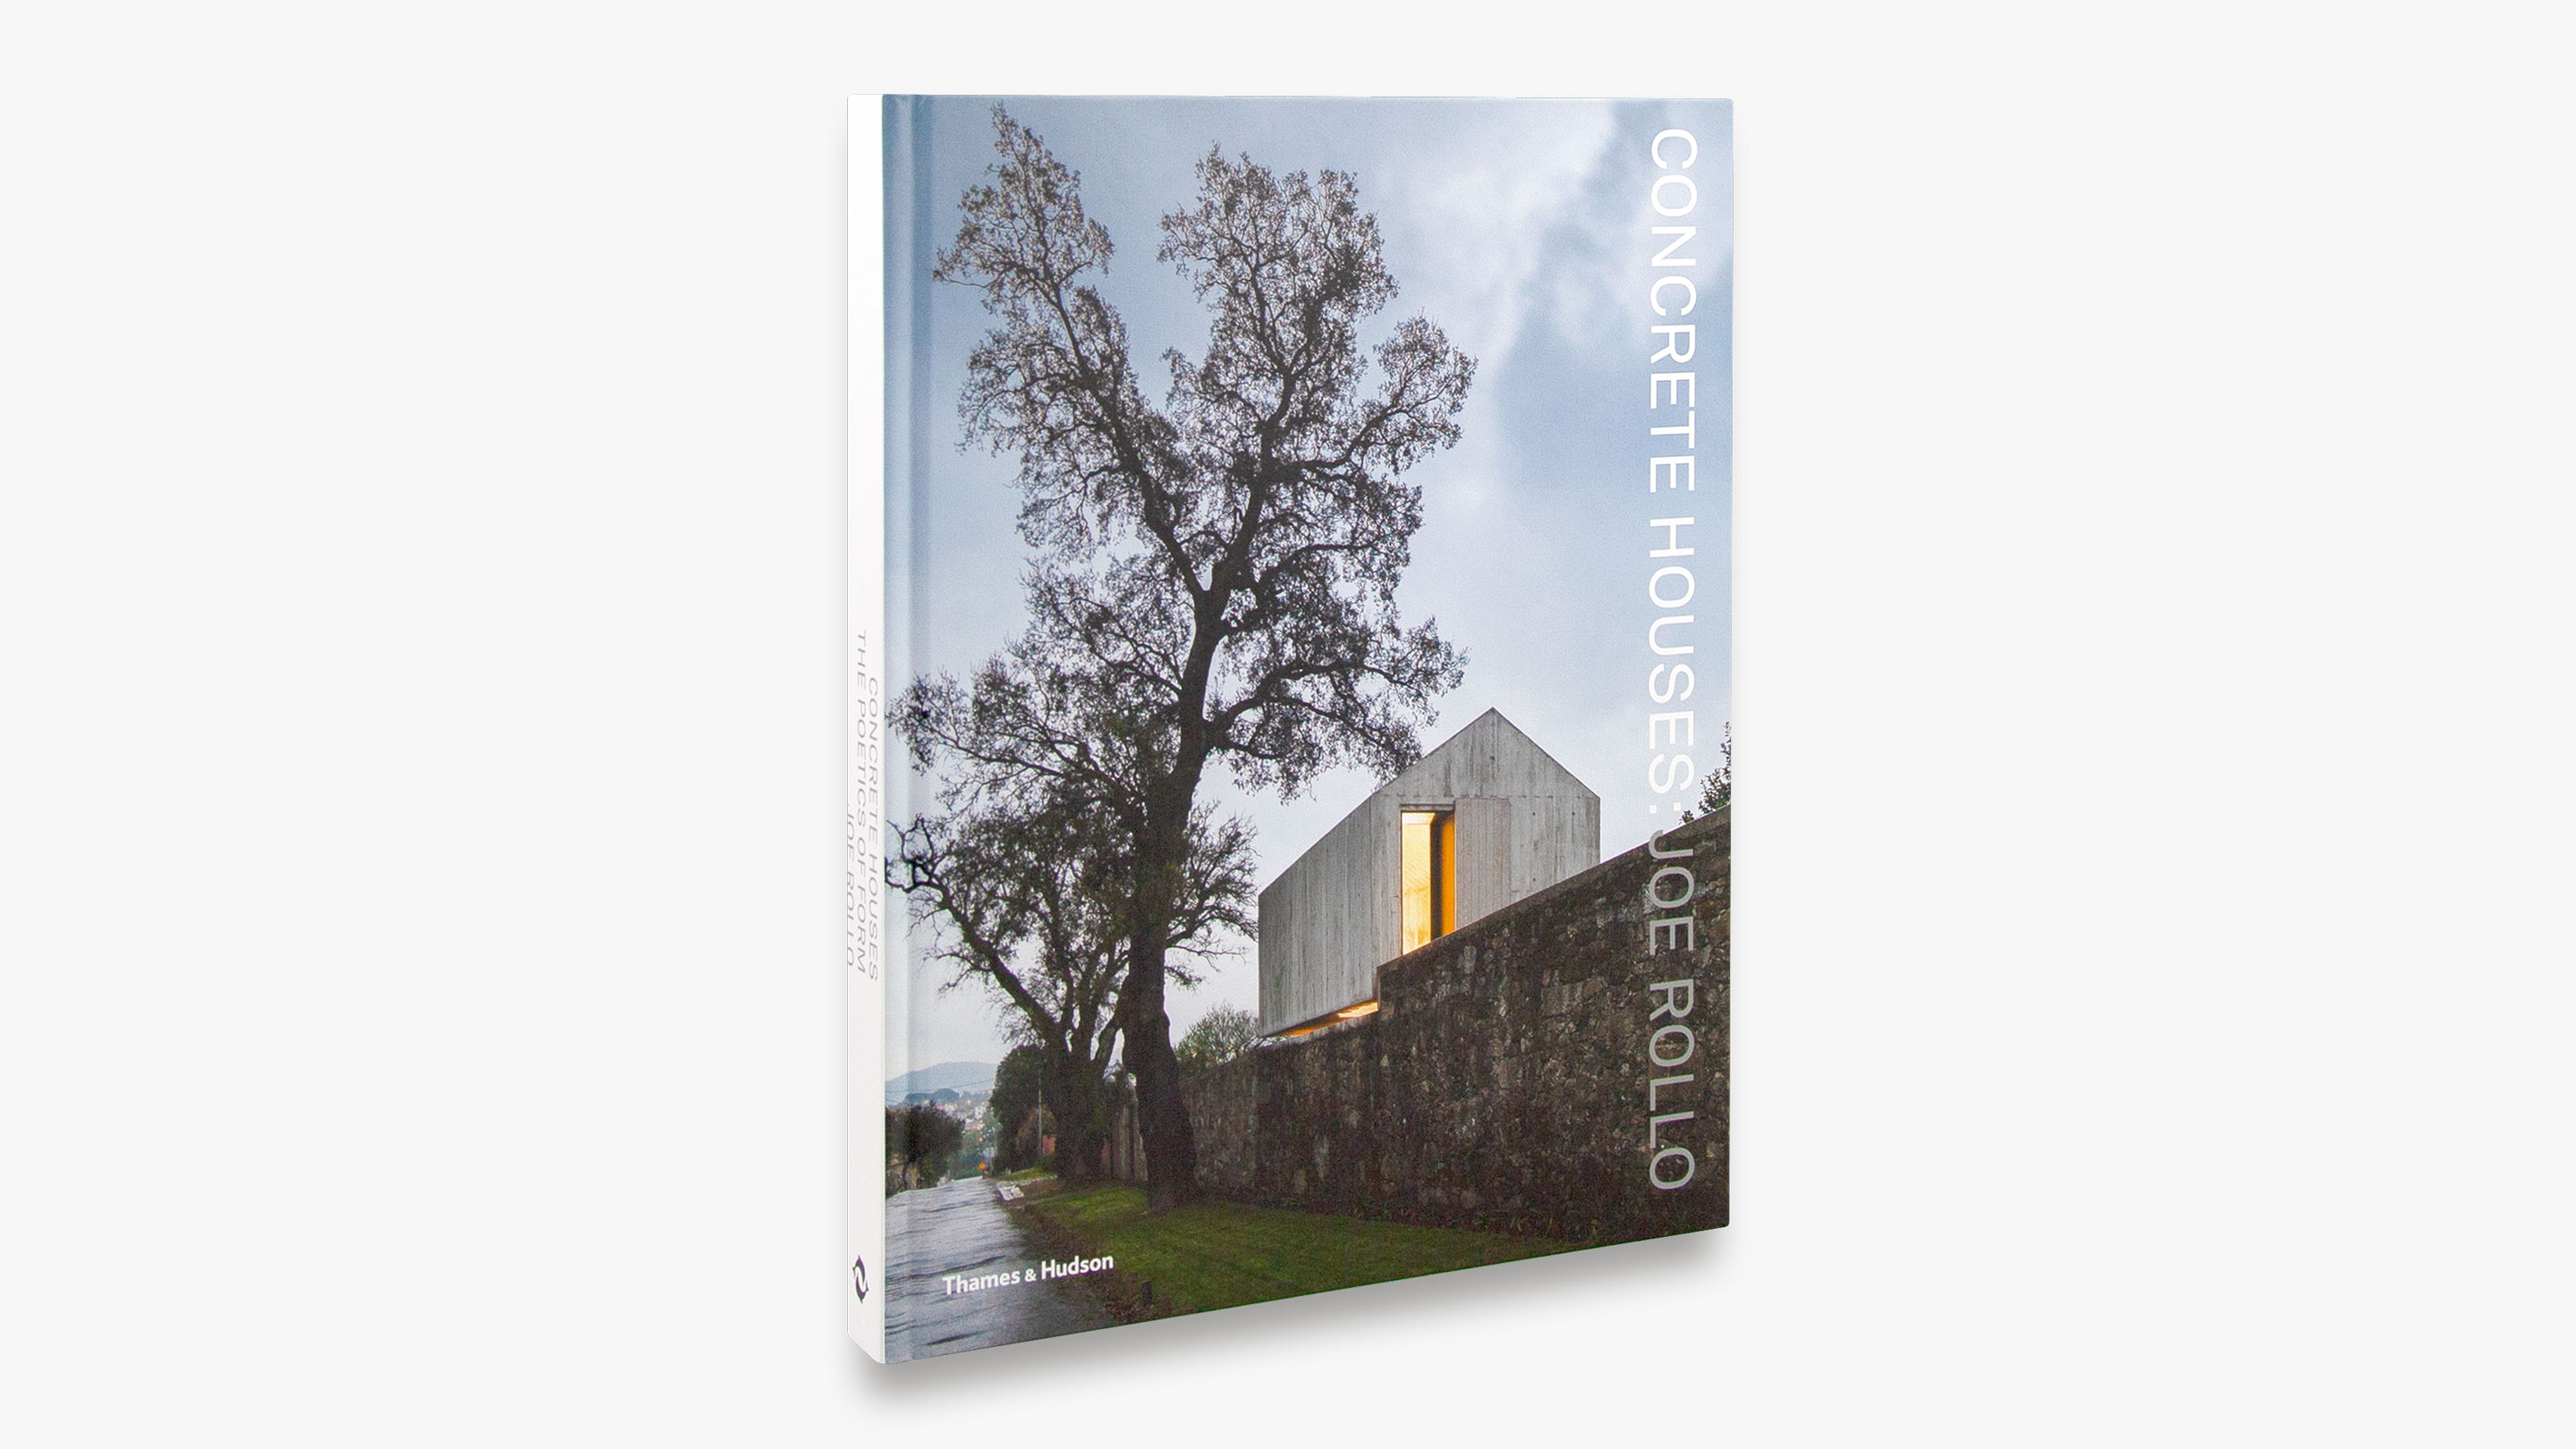 Five breathtaking architecture books for dream home inspiration